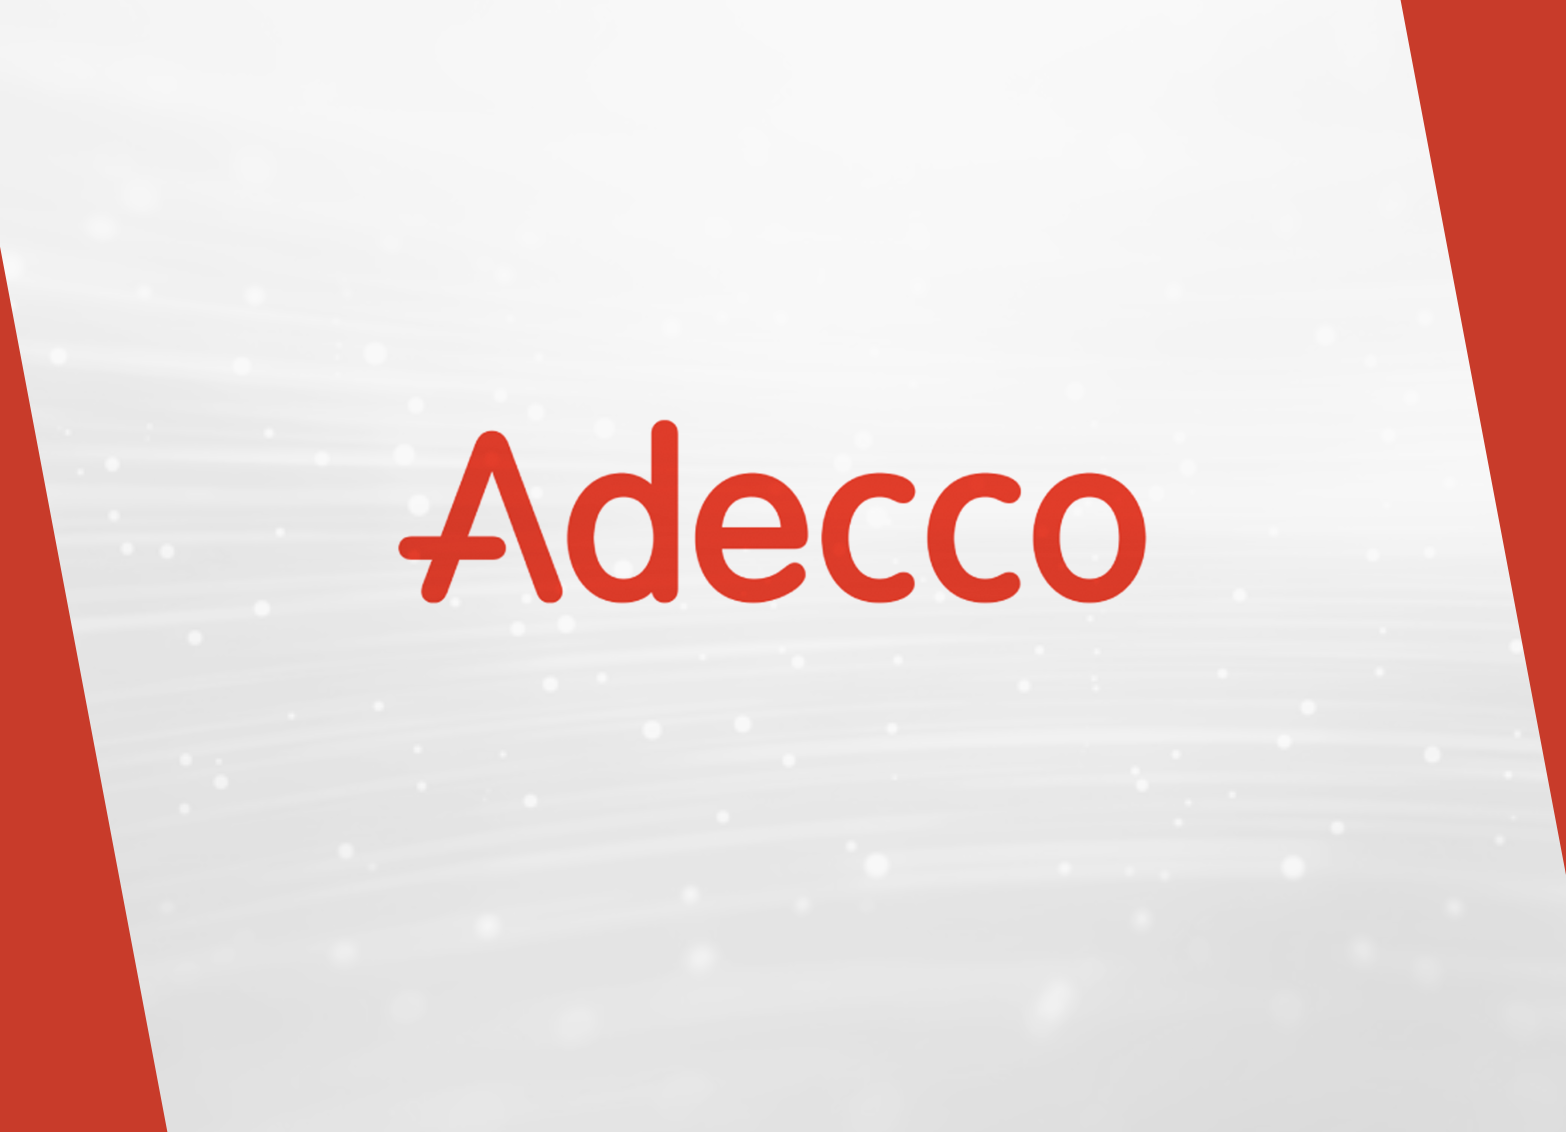 Adecco Innovacion AppConcentracion1